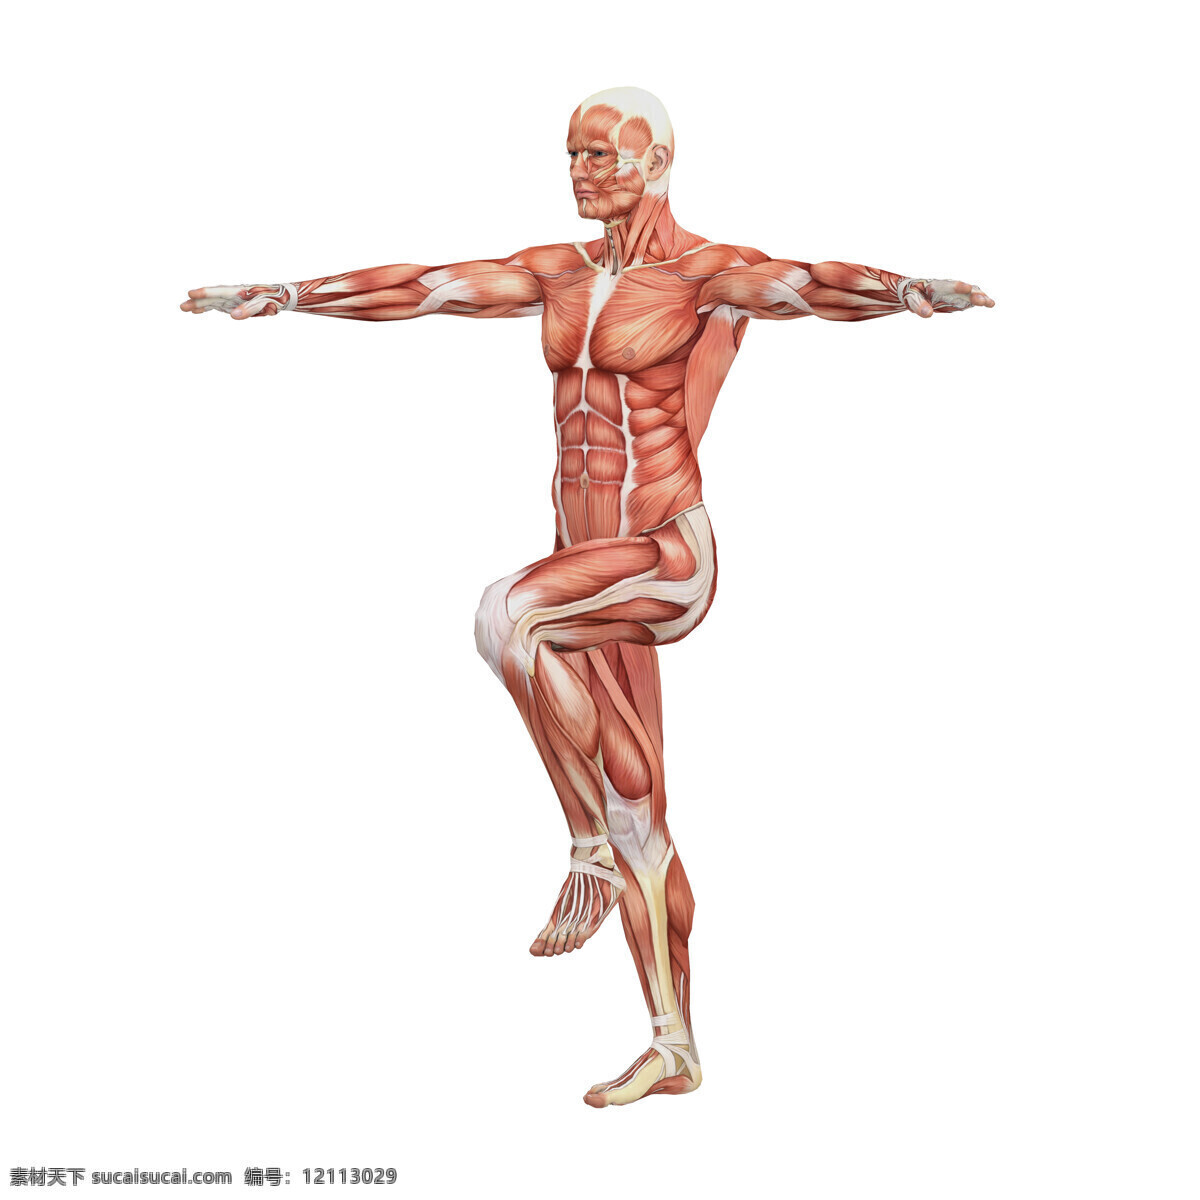 男性人体 人体肌肉 肌肉 人体结构 人体解刨 西医 医院 人体构造 皮下肌肉 医学 人体工学 女性肌肉 女性器官 肌肉分布 肌肉结构 人体研究 生命科技 立体人体 三维人体 人物图库 其他人物